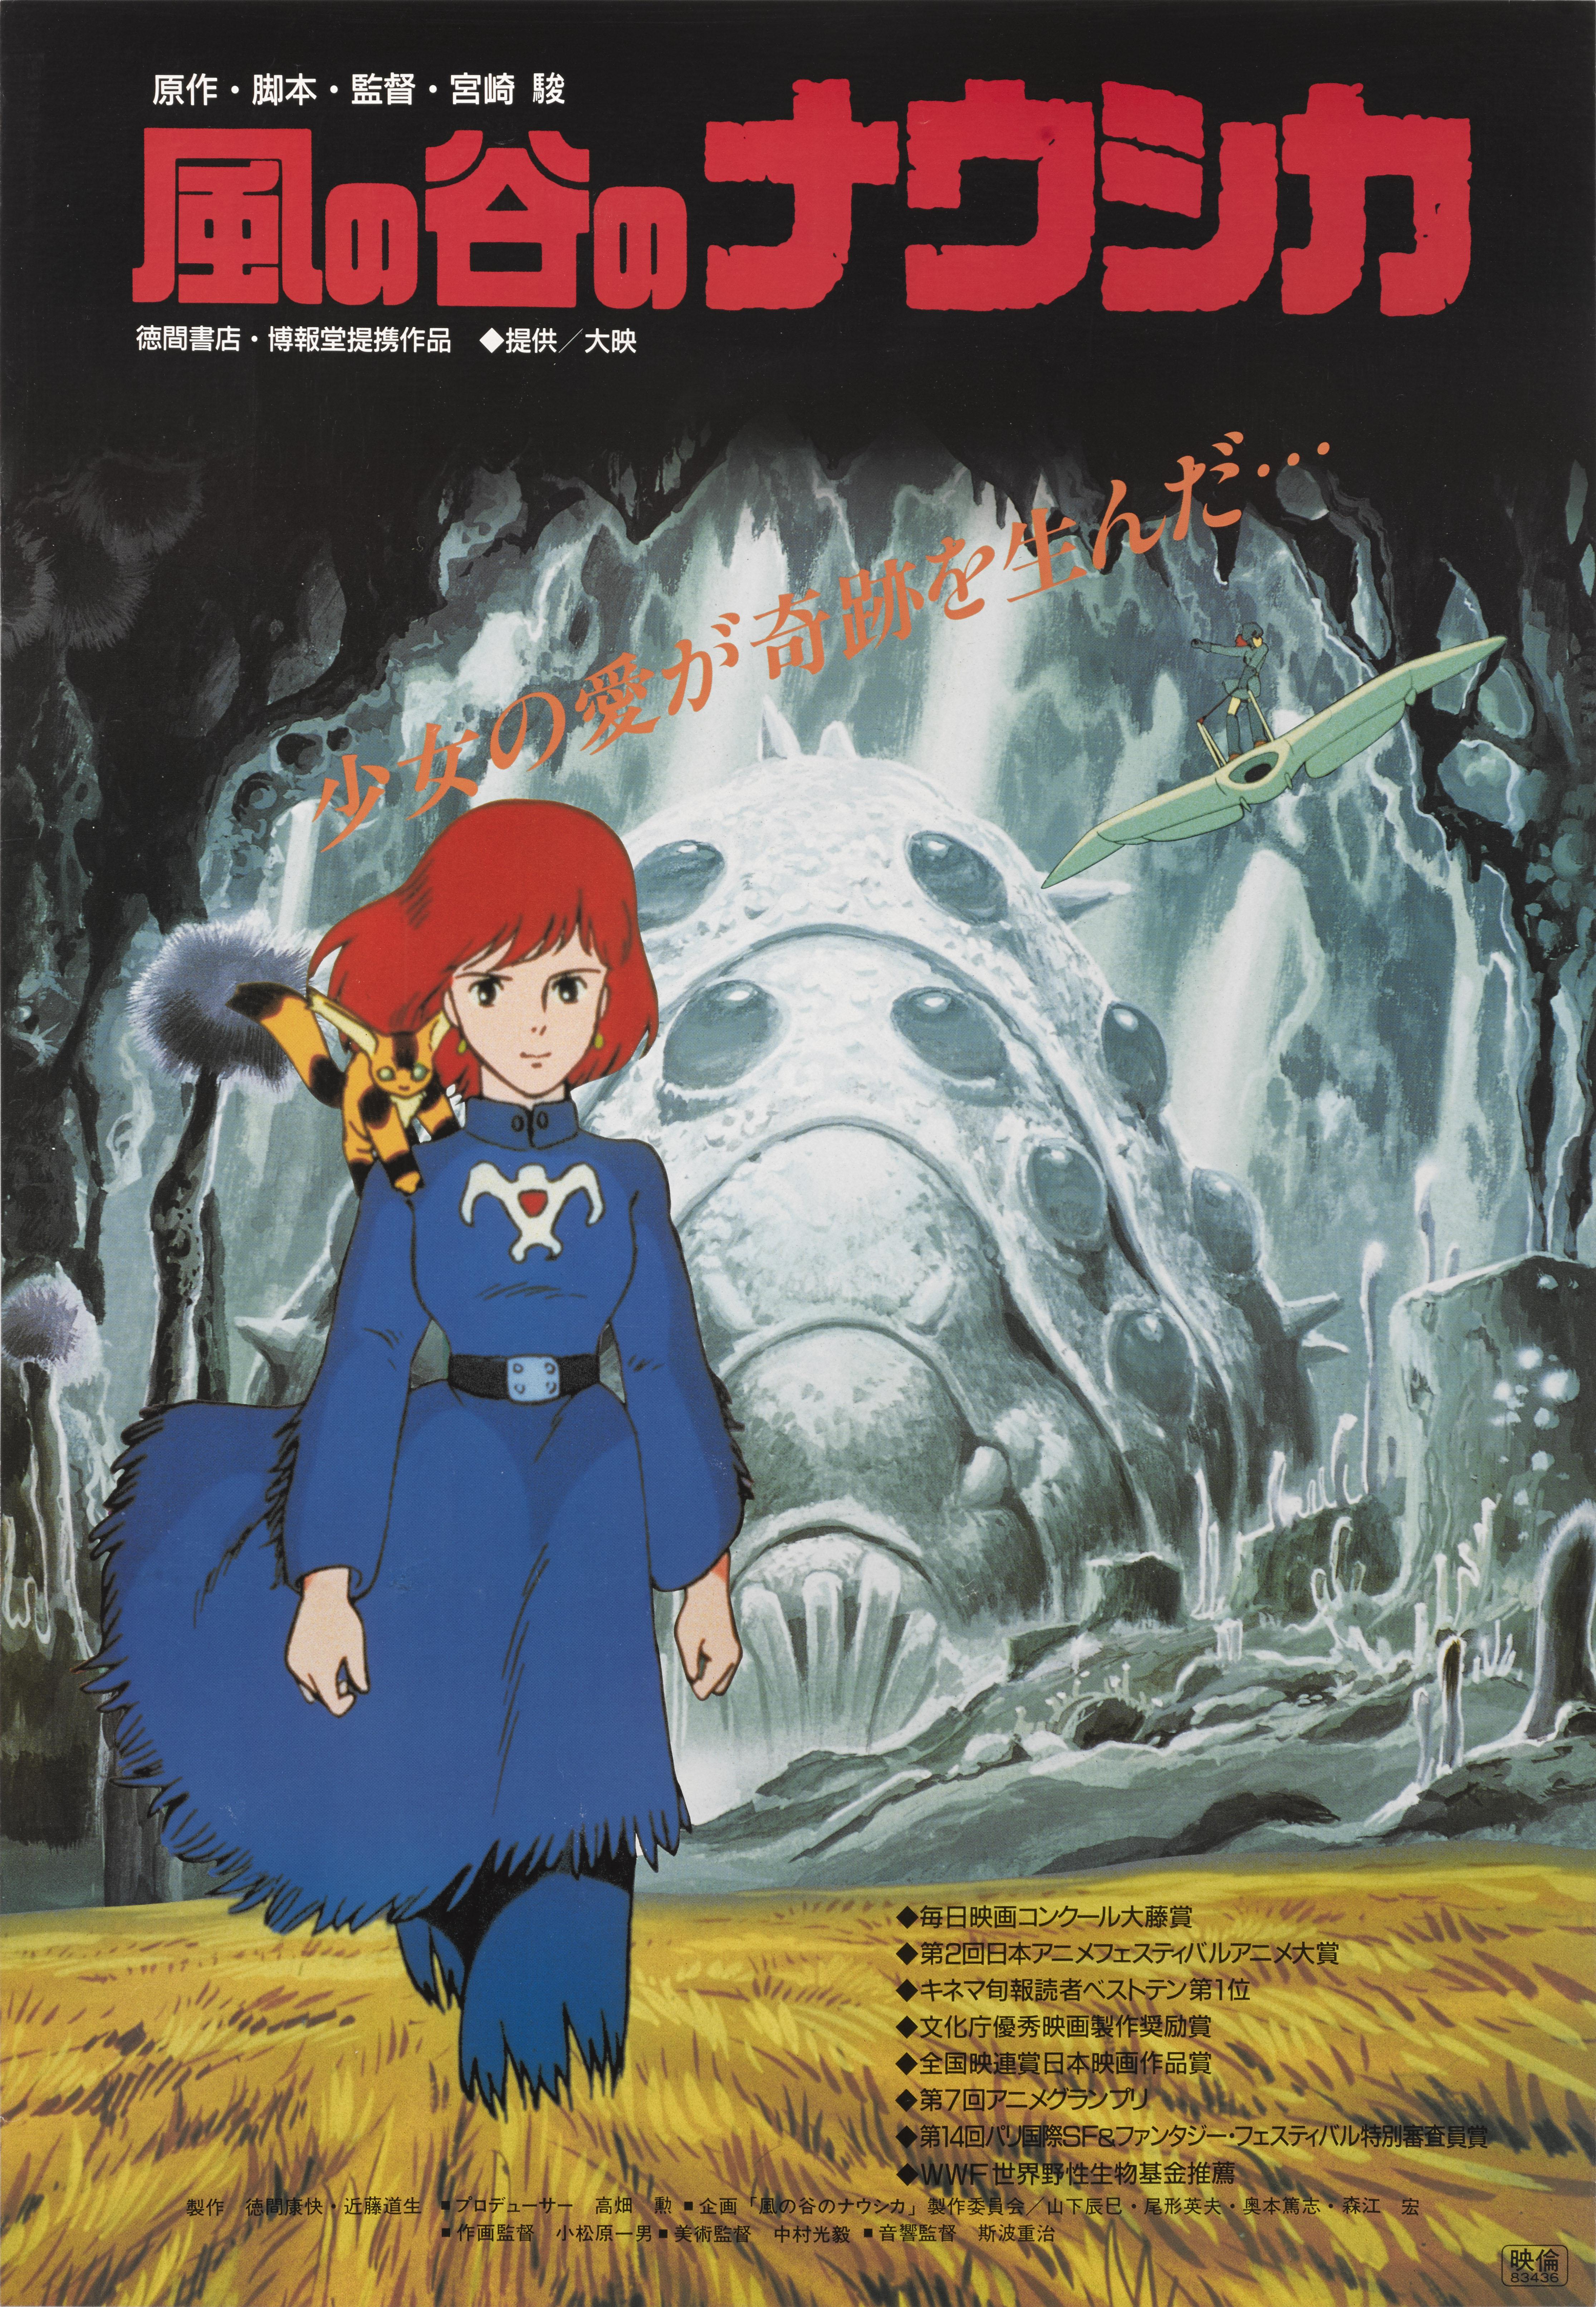 Originales japanisches Filmplakat für den japanischen Animationsfilm von 1984 unter der Regie von Hayao Miyazaki.
Die Grafik auf diesem Plakat wurde für dieses Plakat im Stil der Preisverleihung verwendet.
Dieses Plakat ist ungefaltet und mit